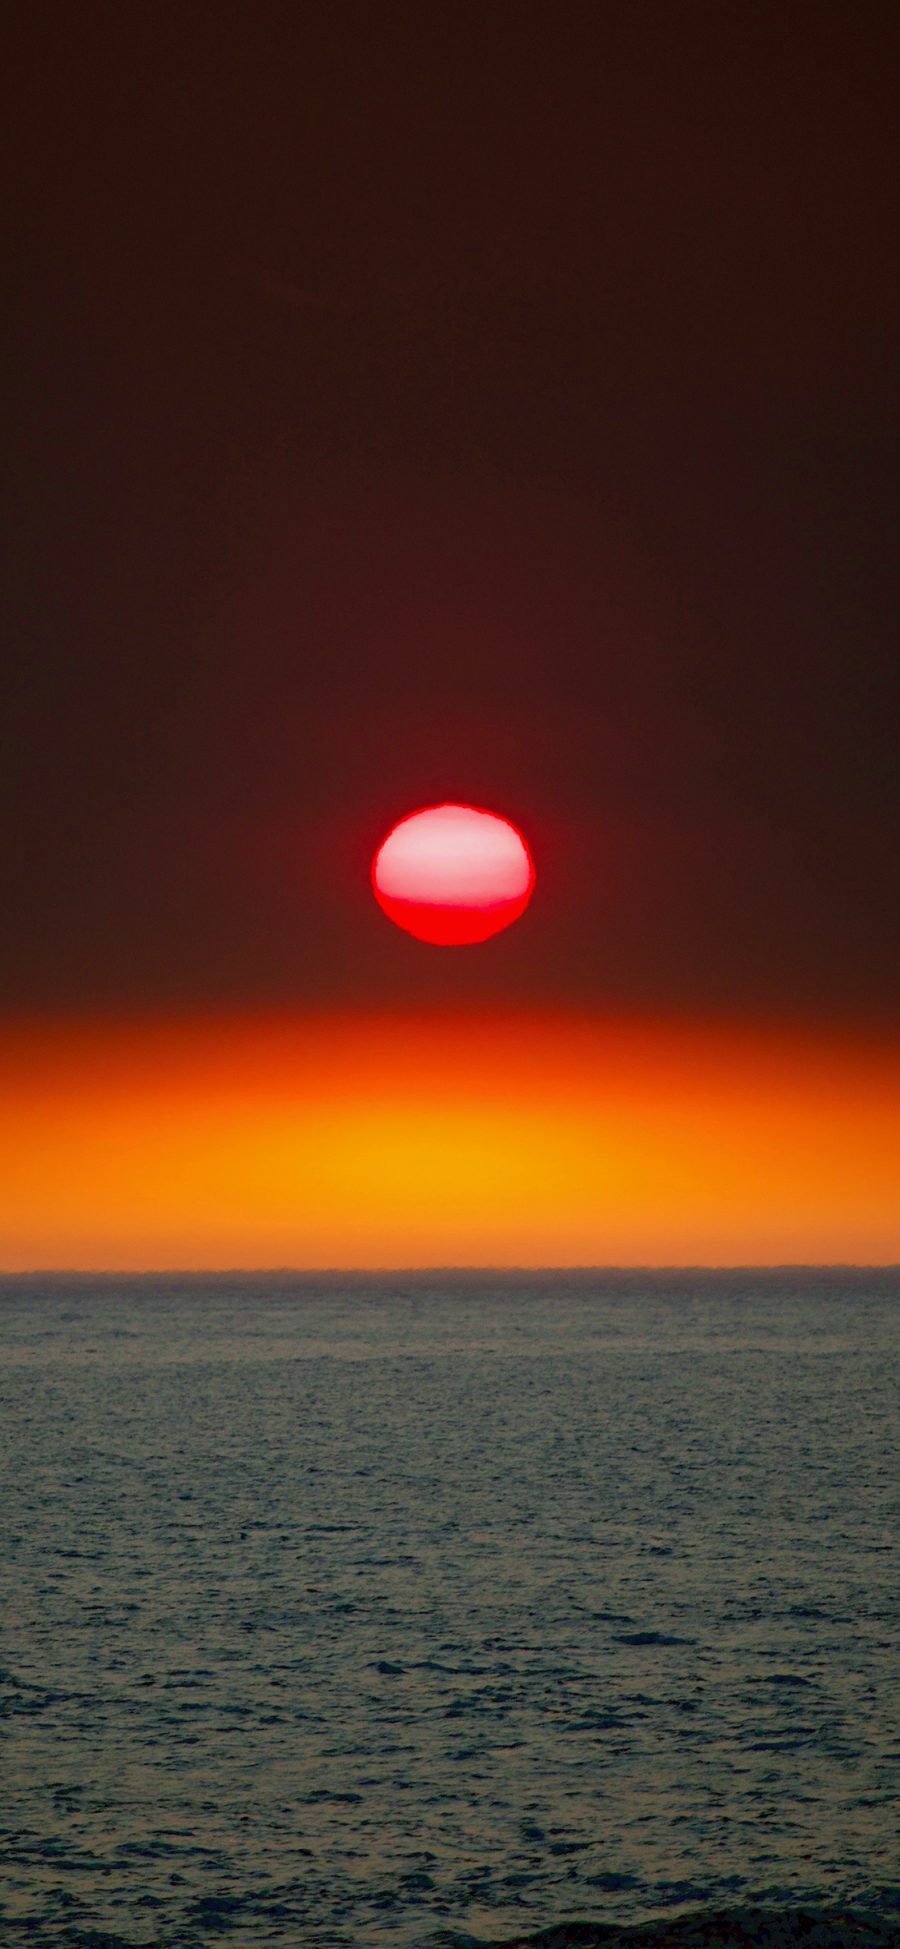 [2436×1125]大海 日出 太阳 红霞 苹果手机壁纸图片